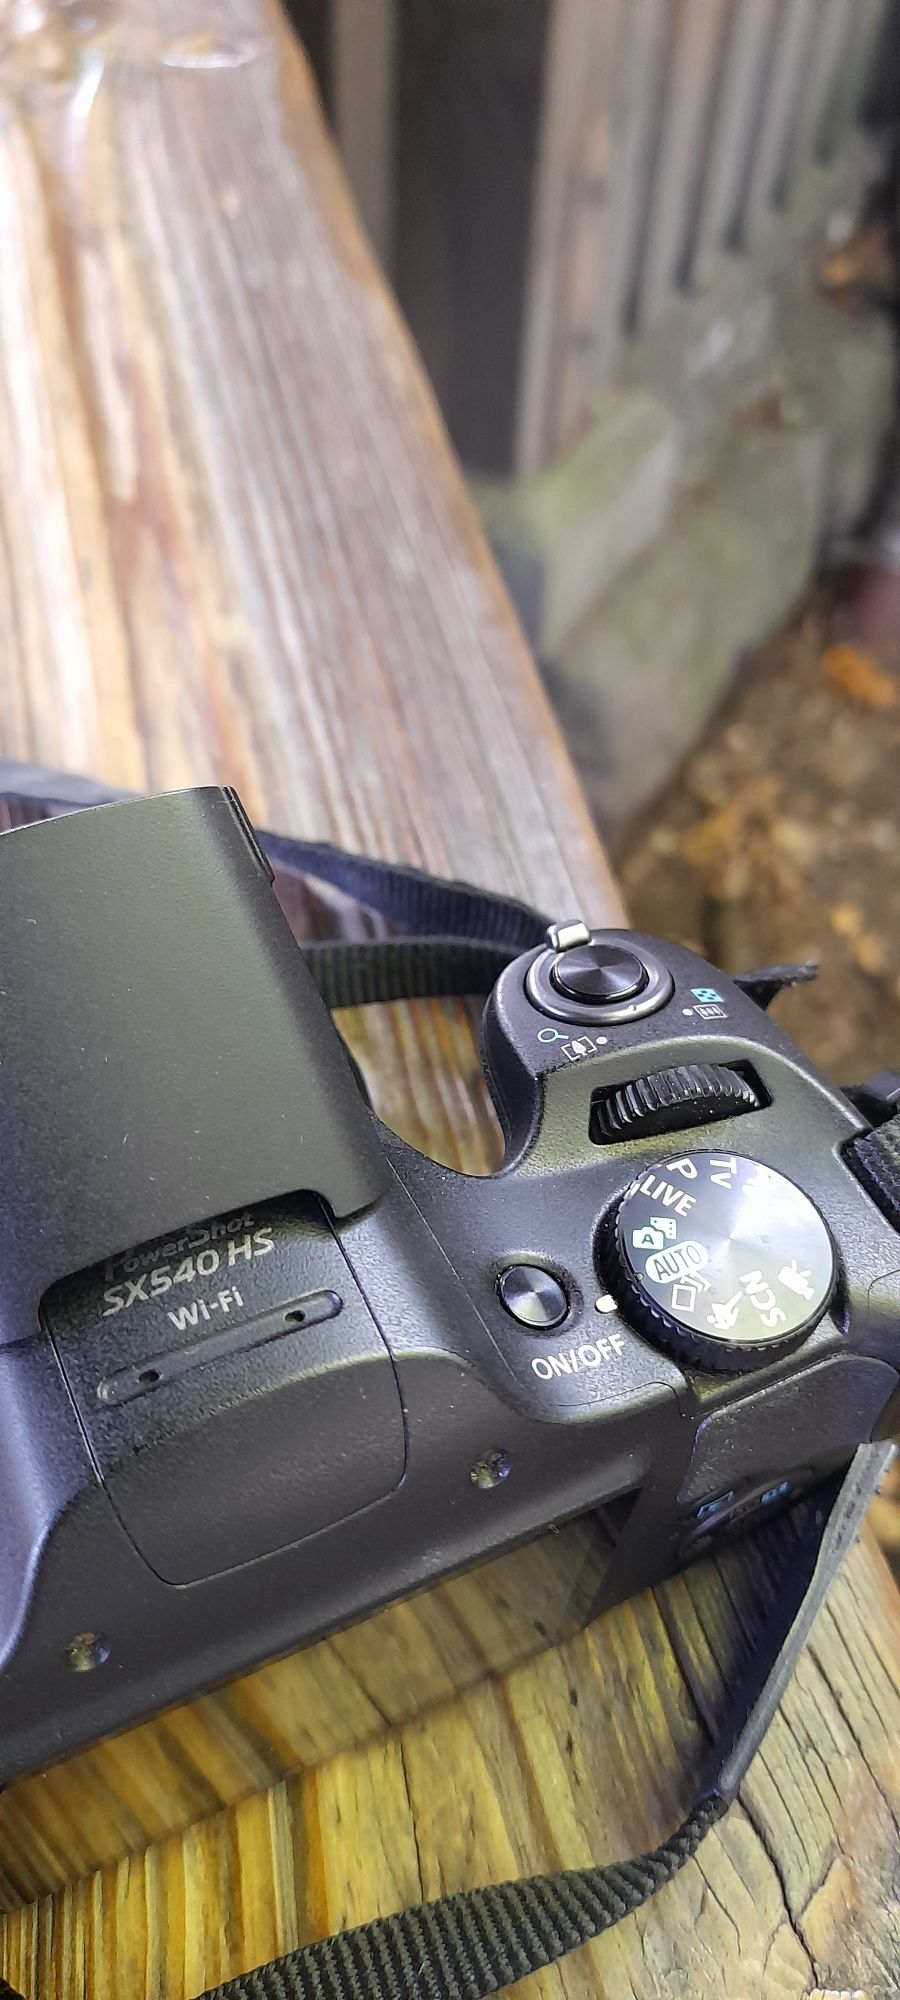 Canon powershot SX 540 hs